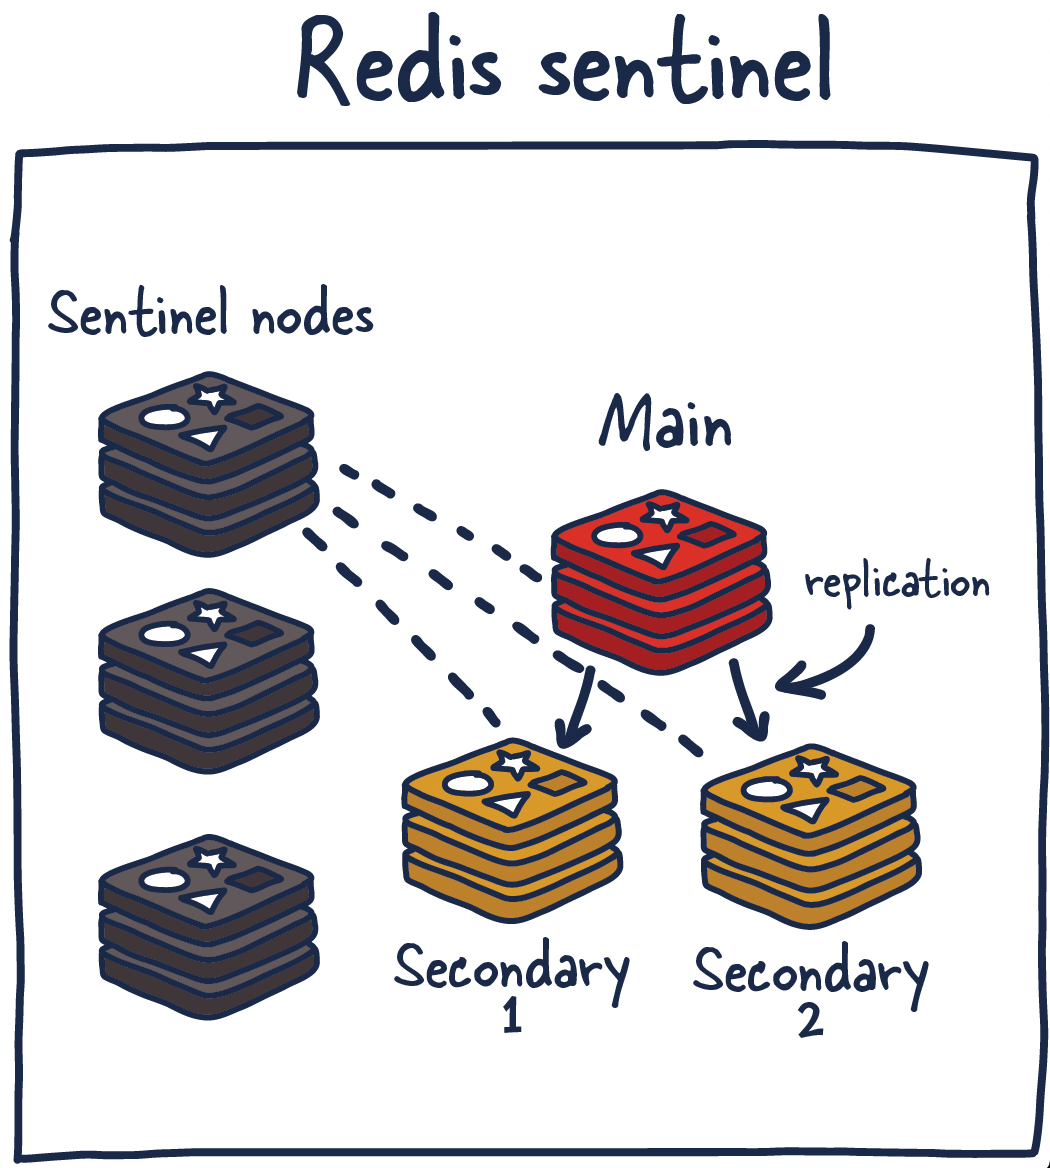 Развёртывание системы с использованием Redis Sentinel. В состав такого развёртывания входят Sentinel-узлы, ведущий узел и подчинённые узлы.